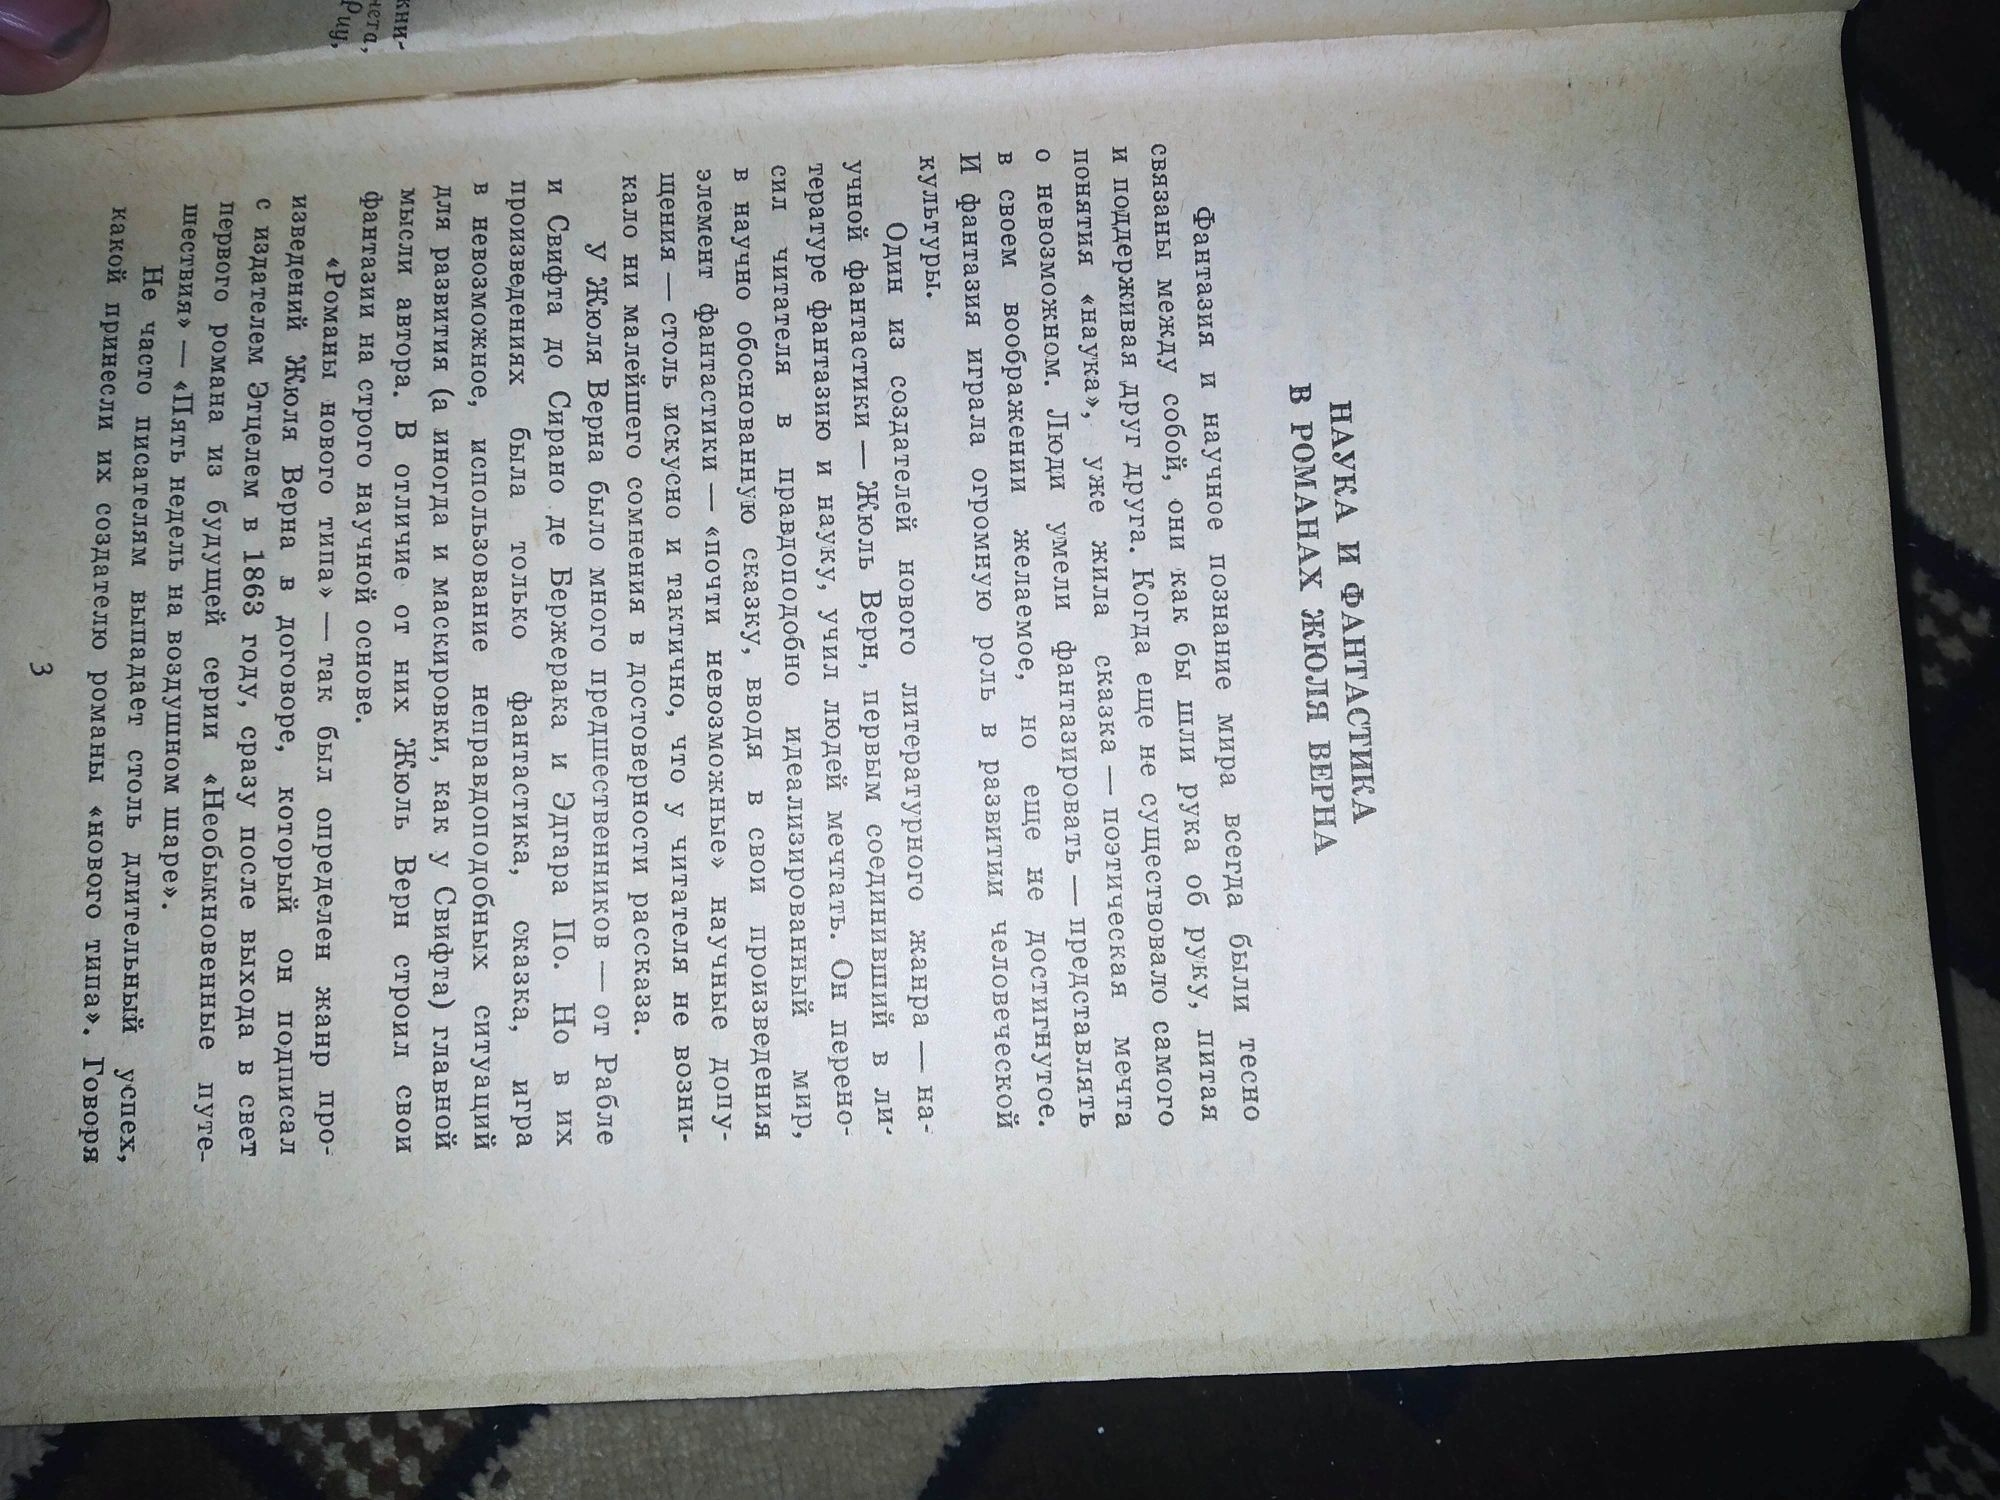 Жуль Верн в 8 томах

Состояние: Хорошее
Год: 1985
Тираж: 750к

Описани